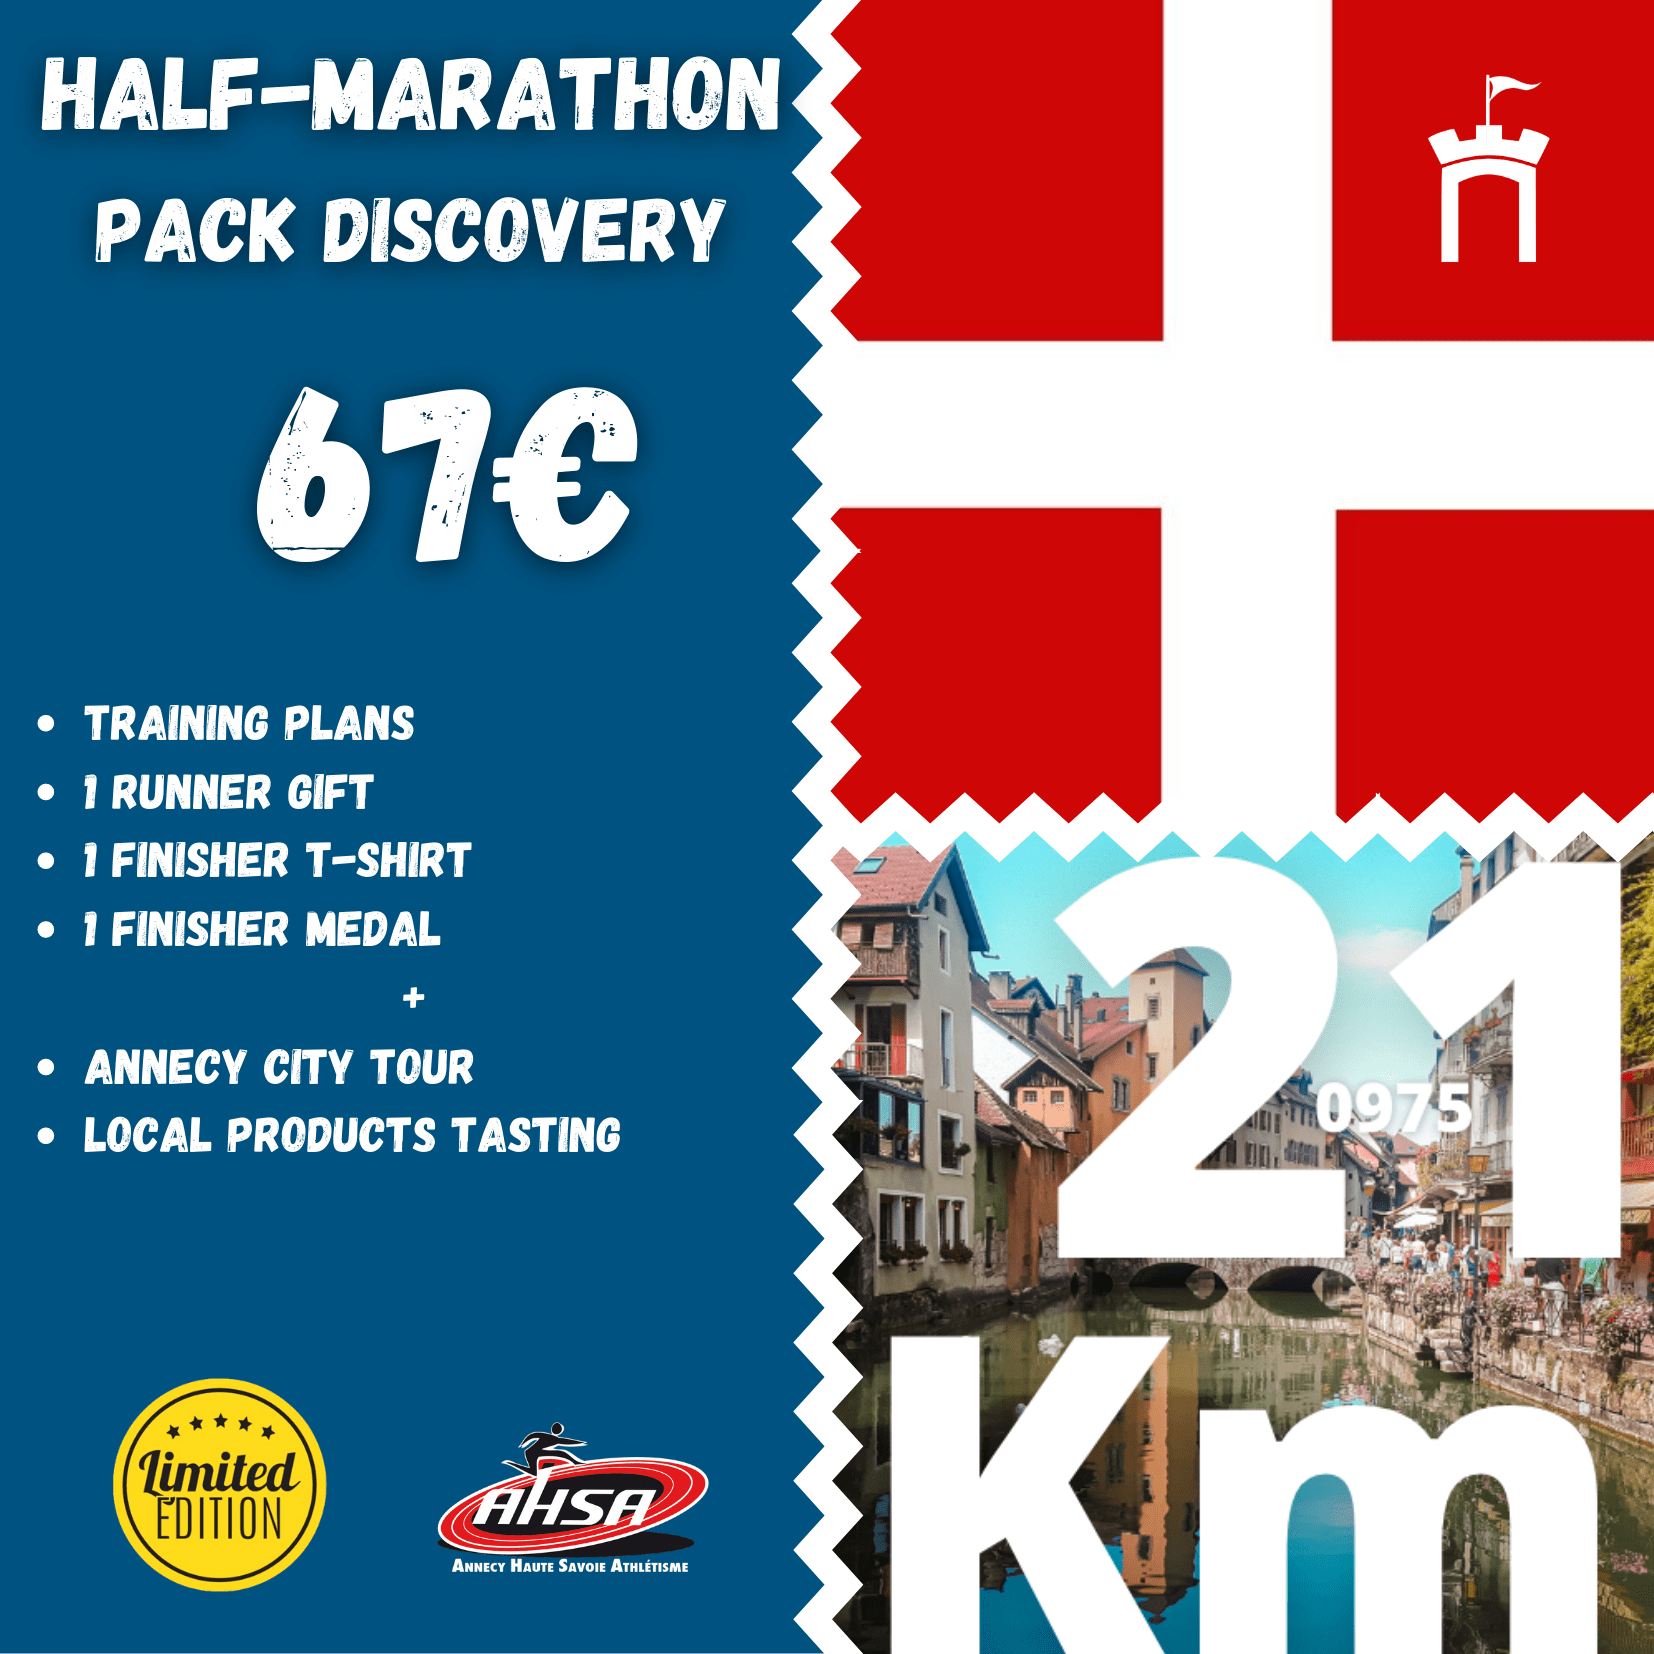 Half-marathon, Annecy lake, running, Haute-Savoie, Rhône Alpes, France, ASHA, Annecy Haute-Savoie Athletism